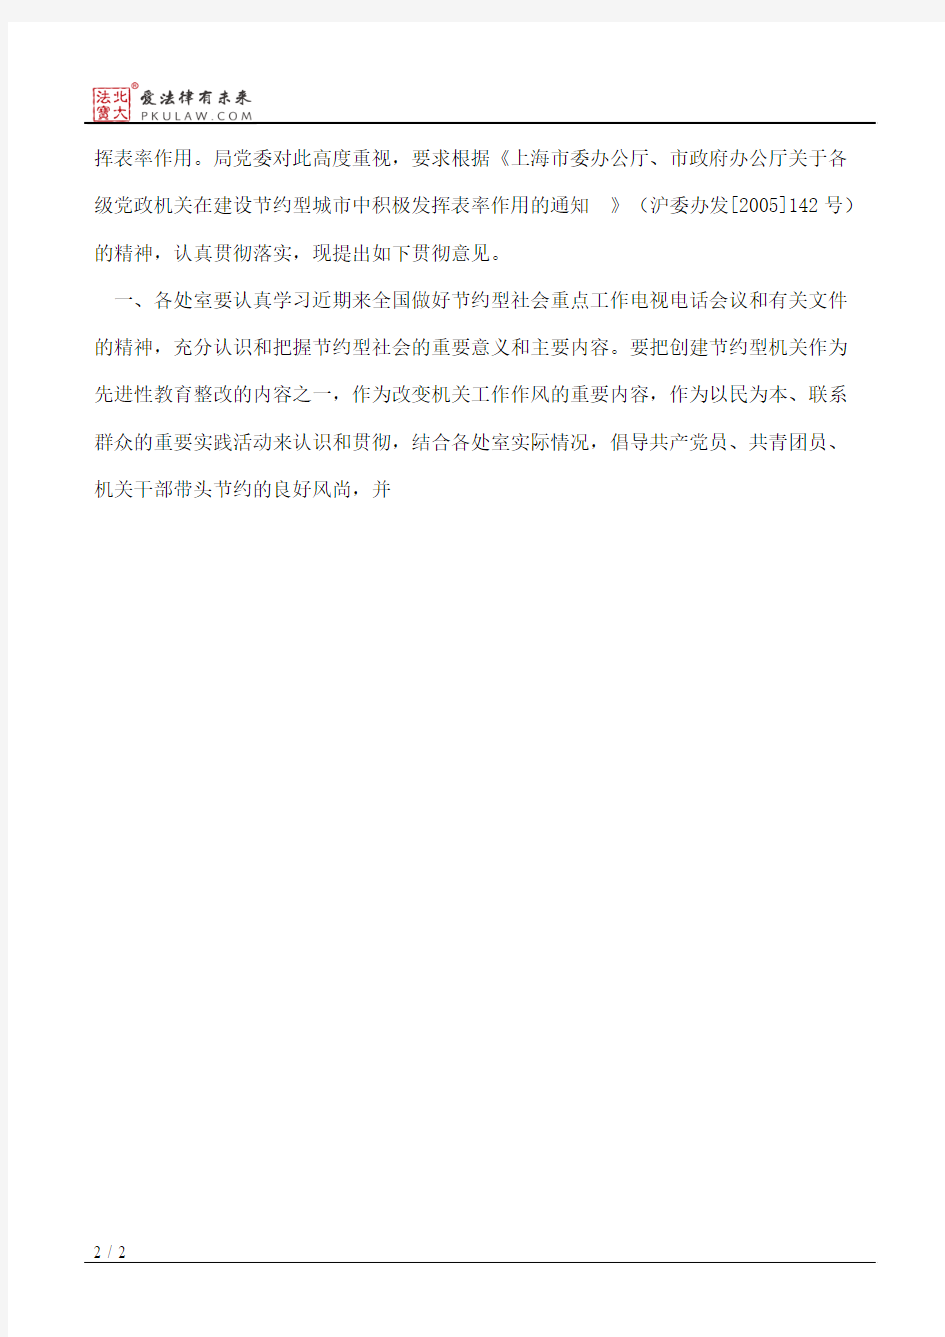 上海市民政局关于贯彻落实《市委办公厅、市政府办公厅关于各级党